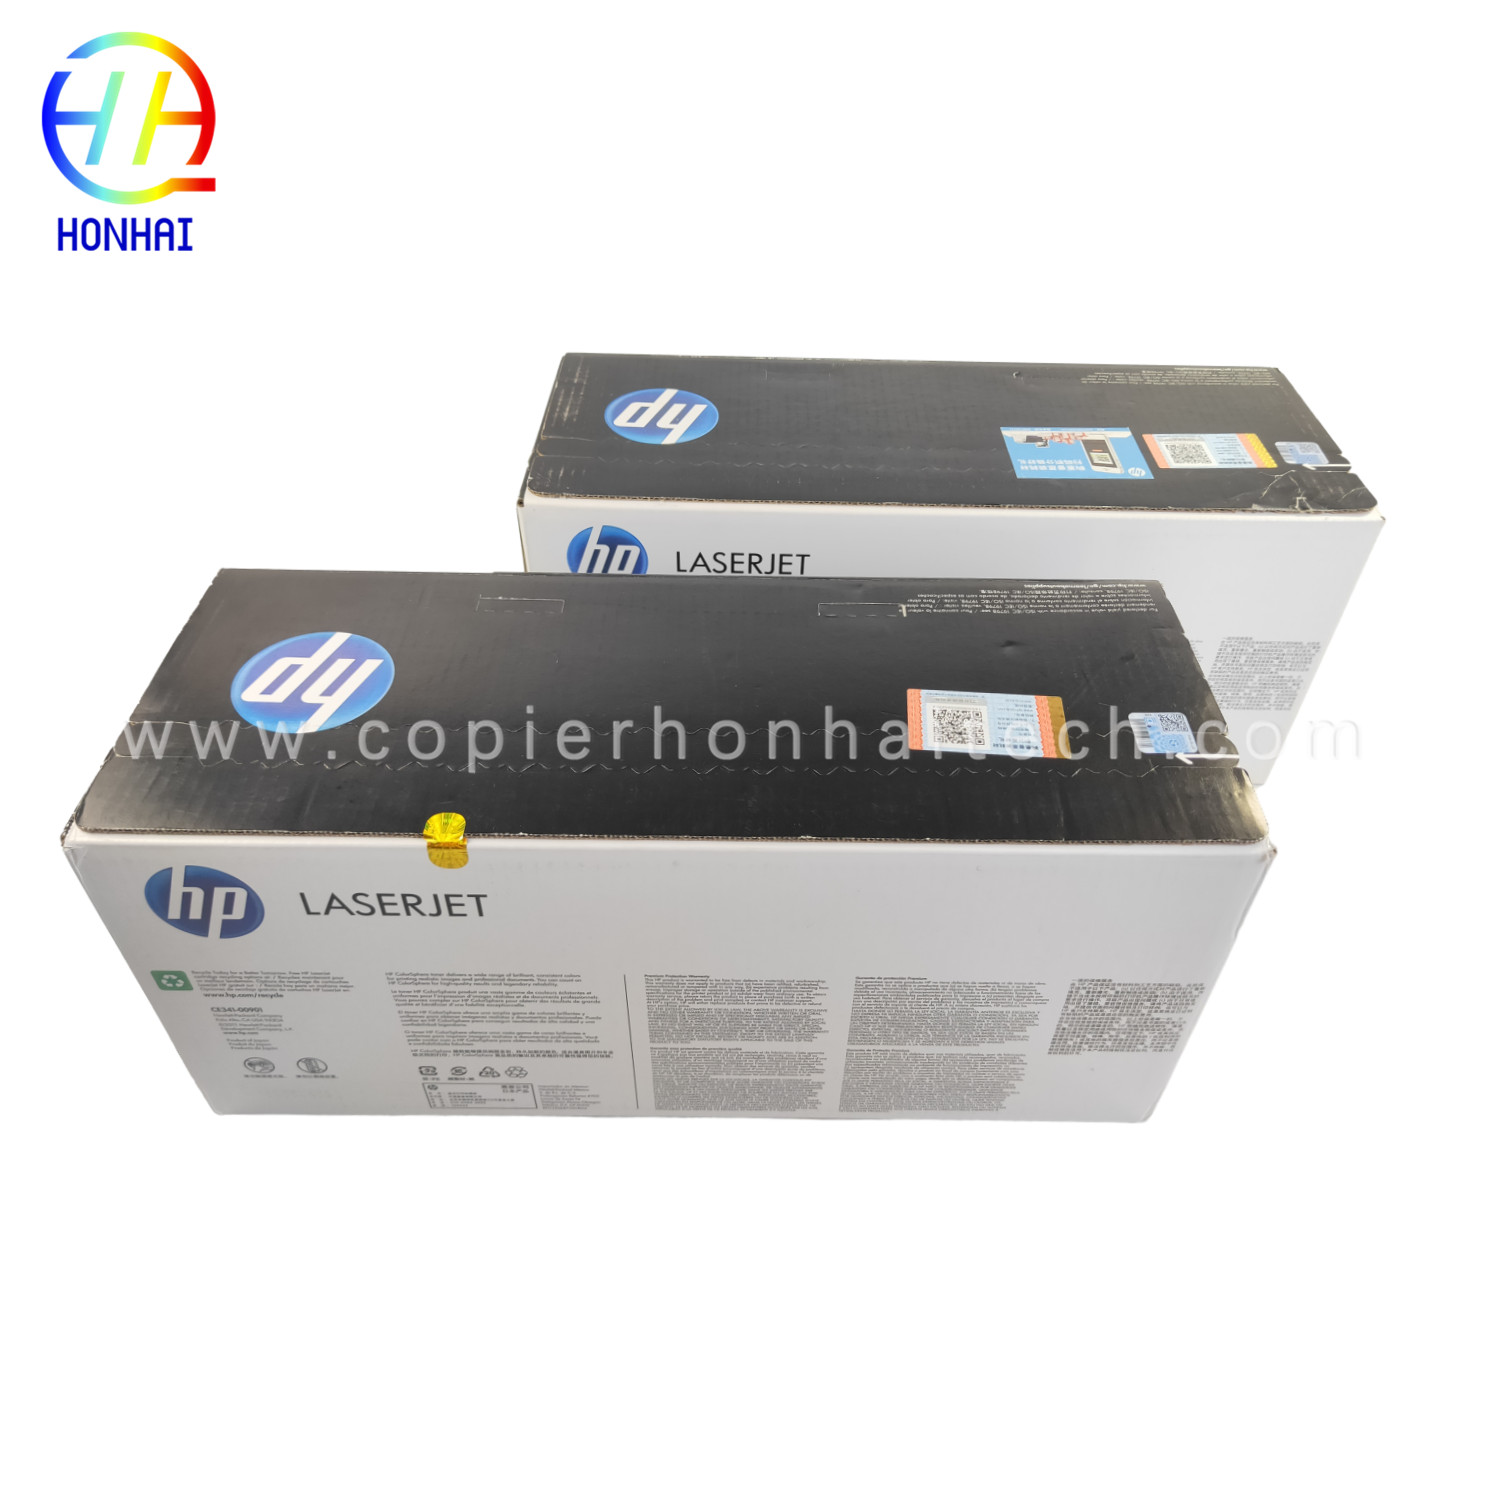 https://www.copierhonhaitech.com/original-toner-cartridge-for-hp-laserjet-enterprise-700-color-mfp-m775-series-651a-ce341a-cyan-ce342ac-white-16000-page-product/